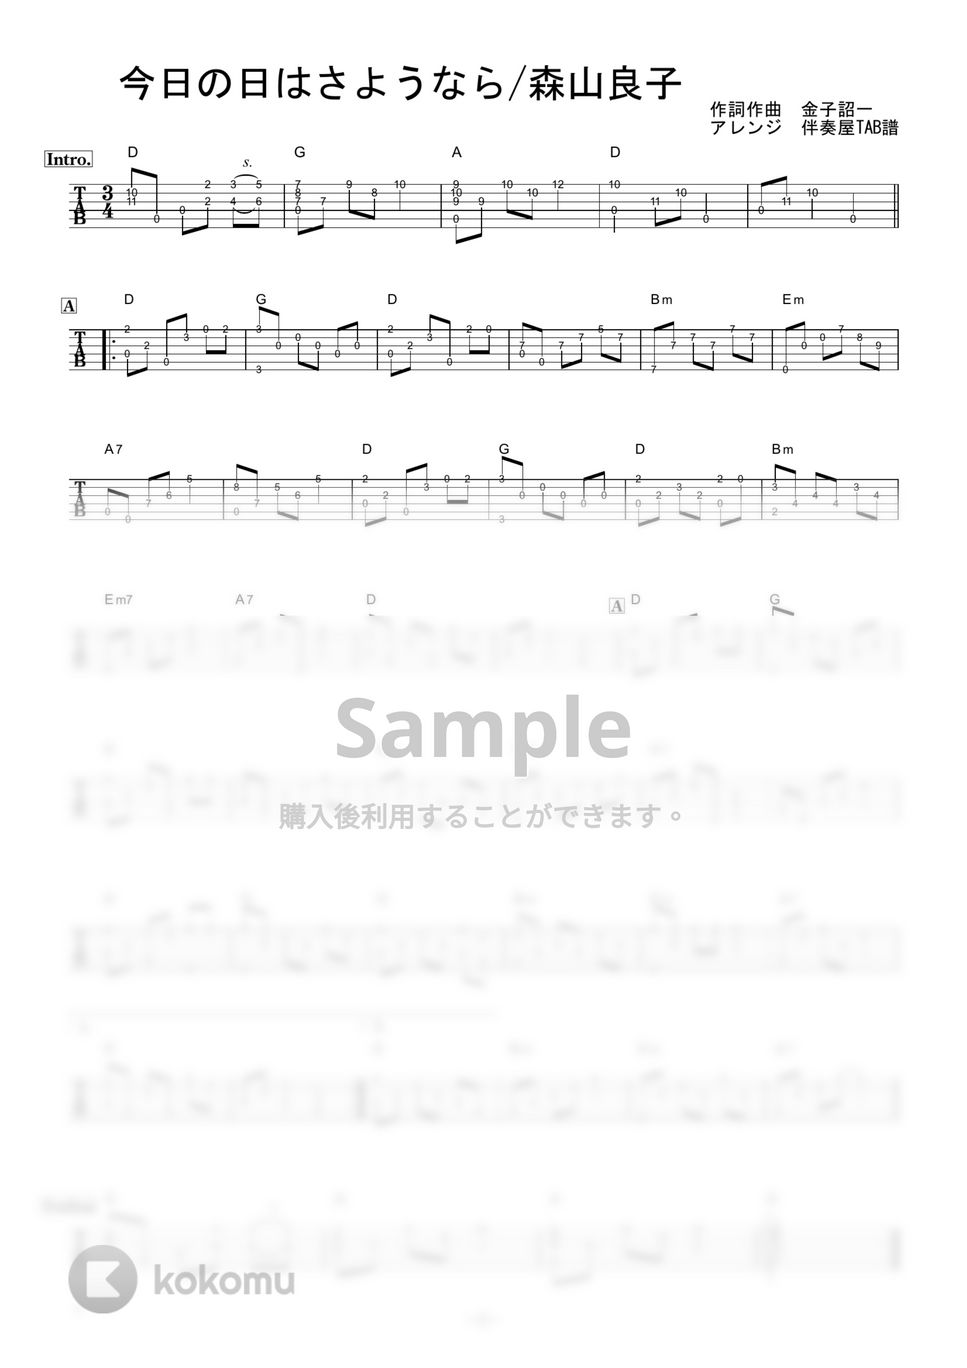 森山良子 - 今日の日はさようなら (ギター伴奏/イントロ・間奏ソロギター) by 伴奏屋TAB譜